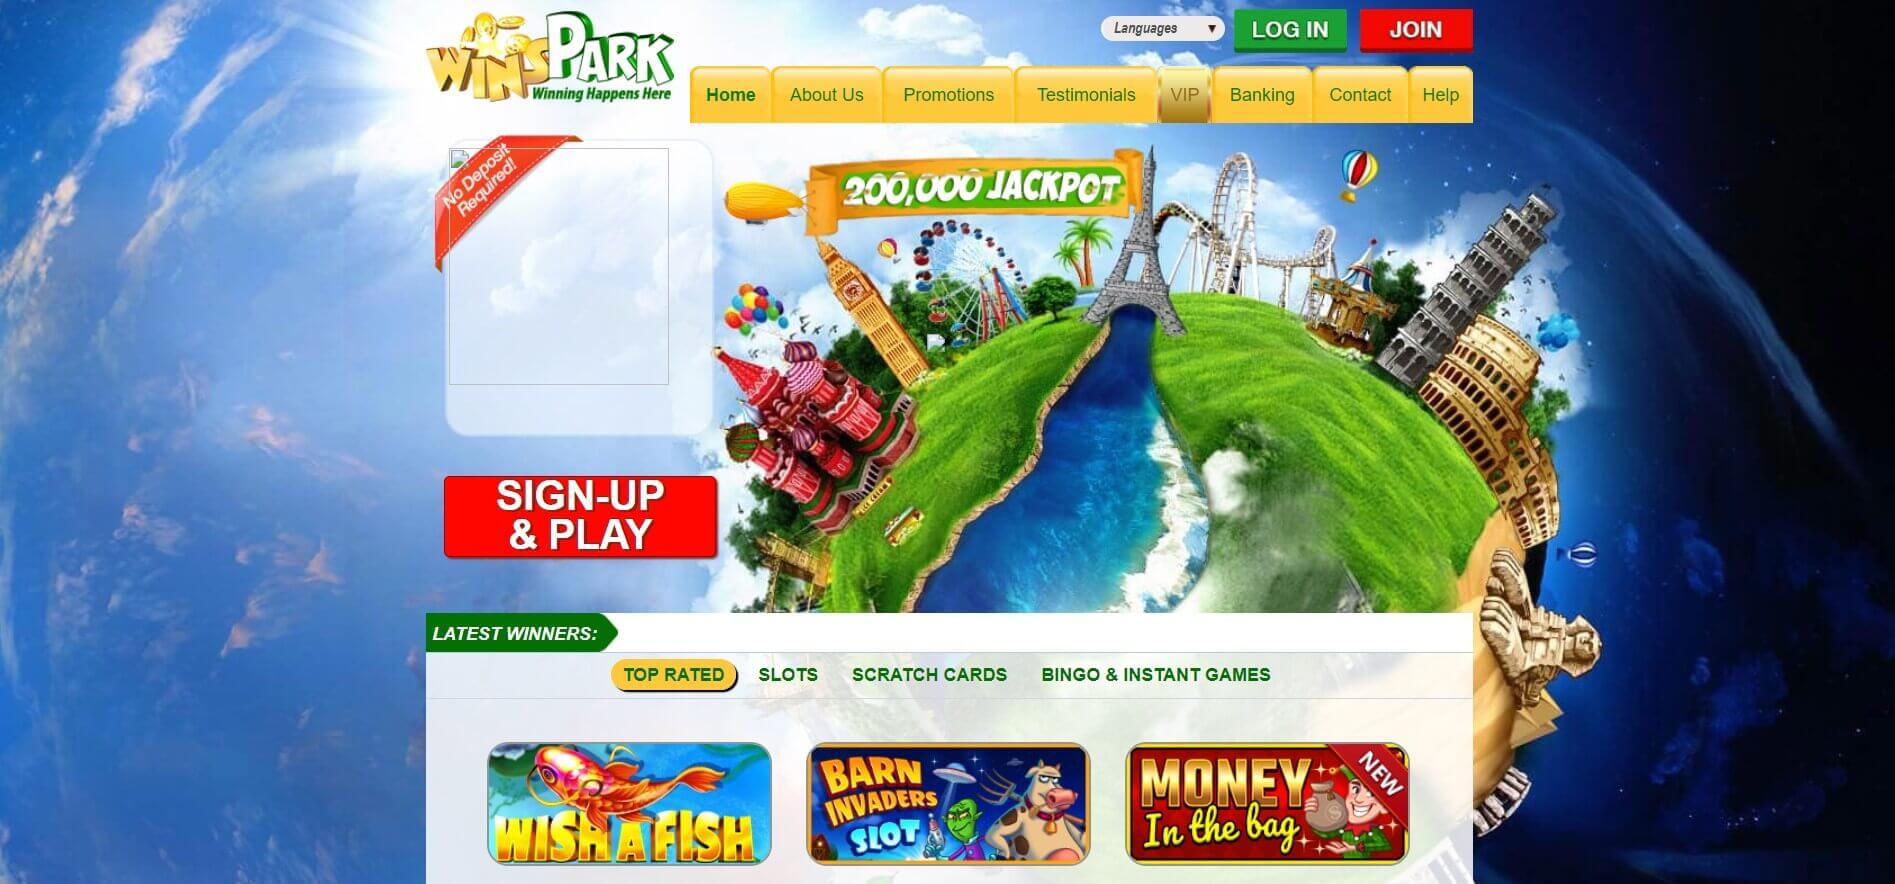 winspark casino online